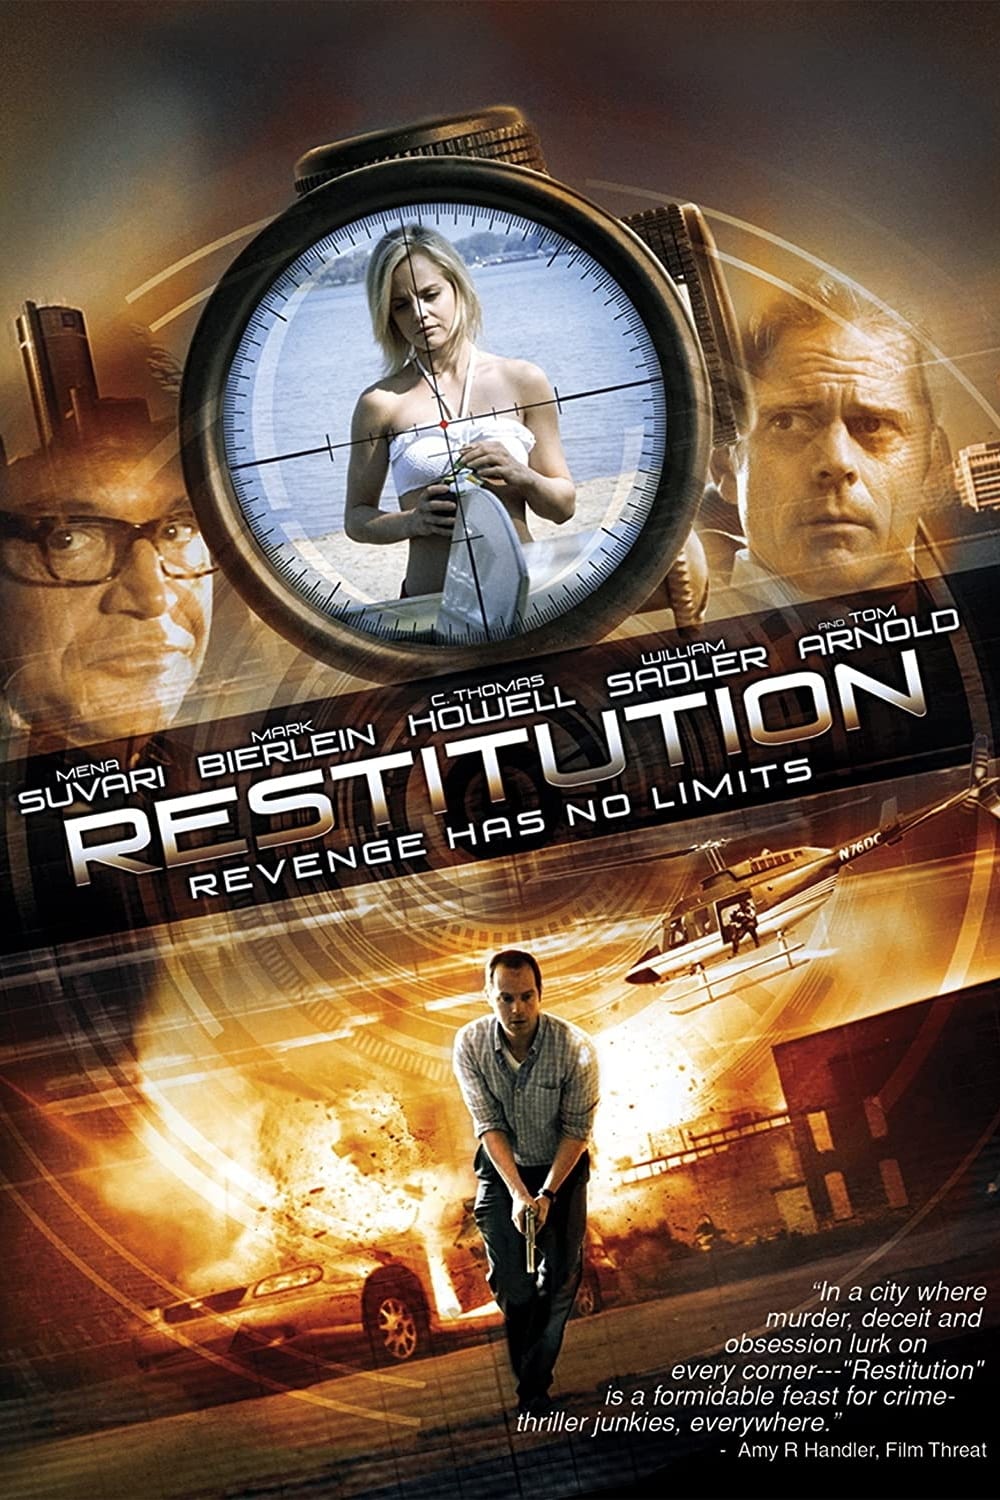 Restitution (2011)